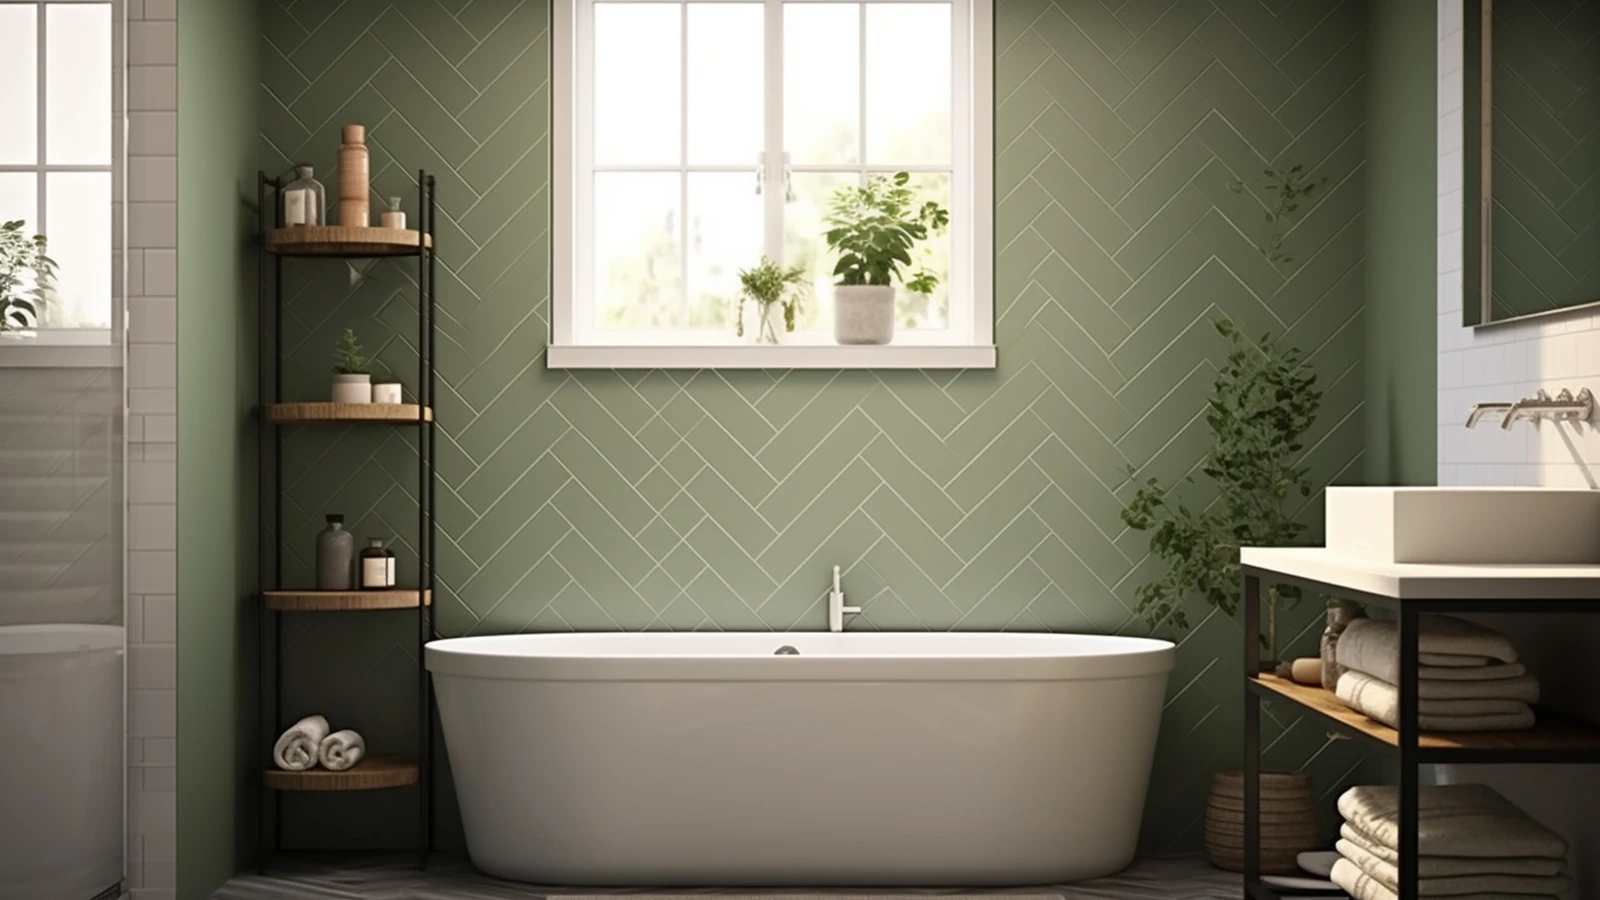 Sage green bathroom decor ideas: A bathroom with green walls and a bathtub.